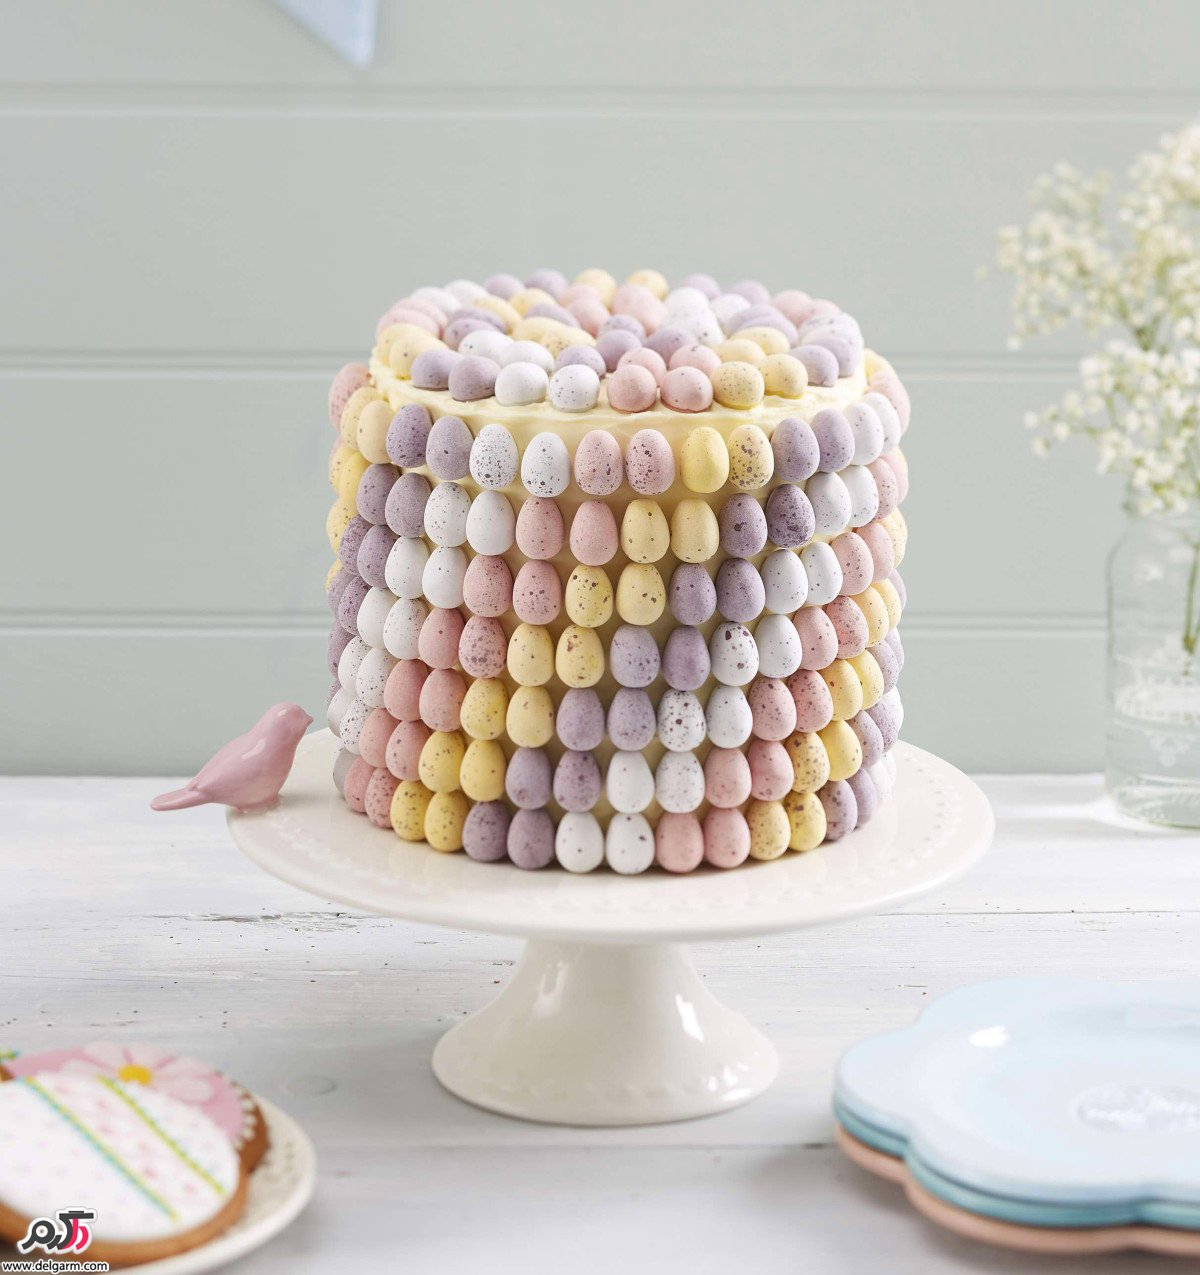 تزیین کیک تولد خانگی با ایده های جدید و خلاقانه